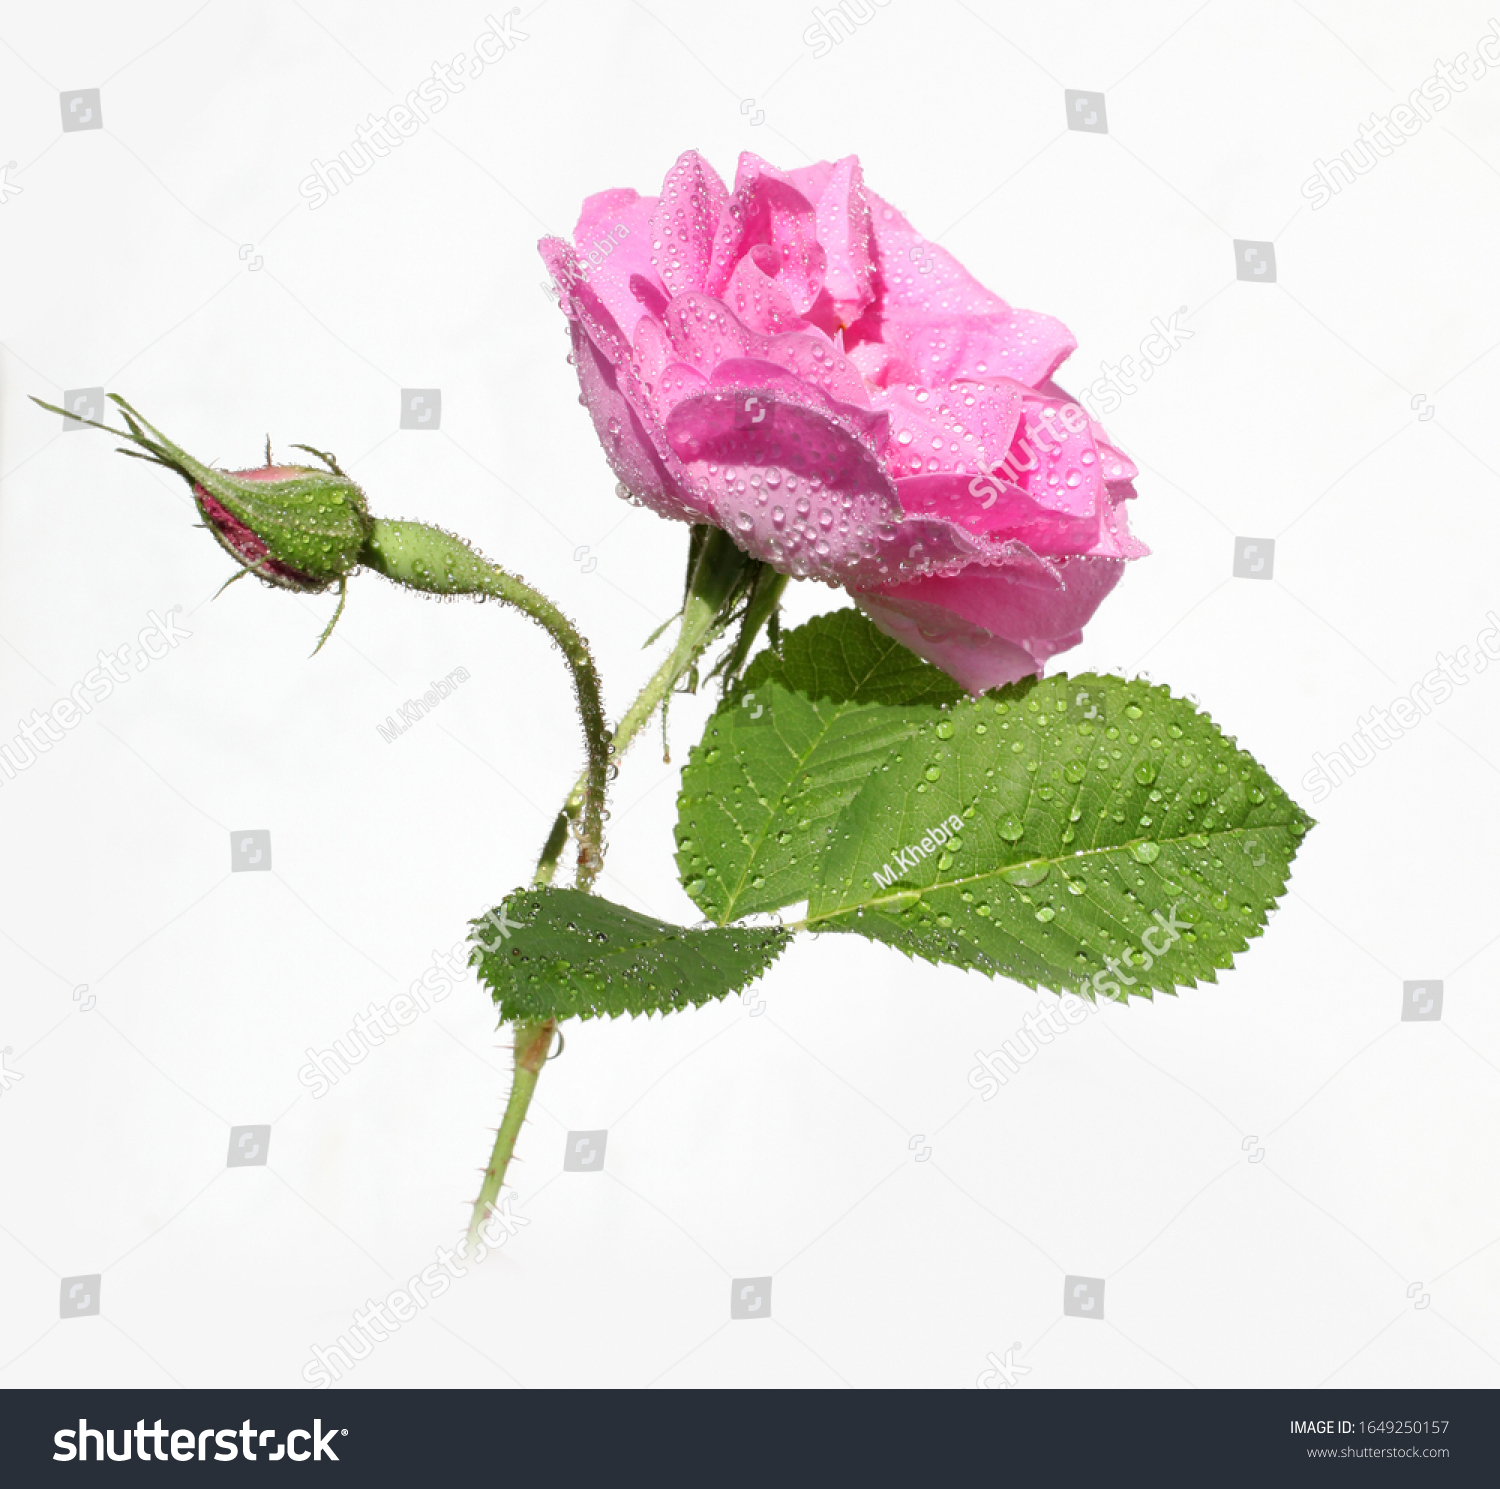 Damask rose petals for rose tea on white background (Rosa damascena) #1649250157